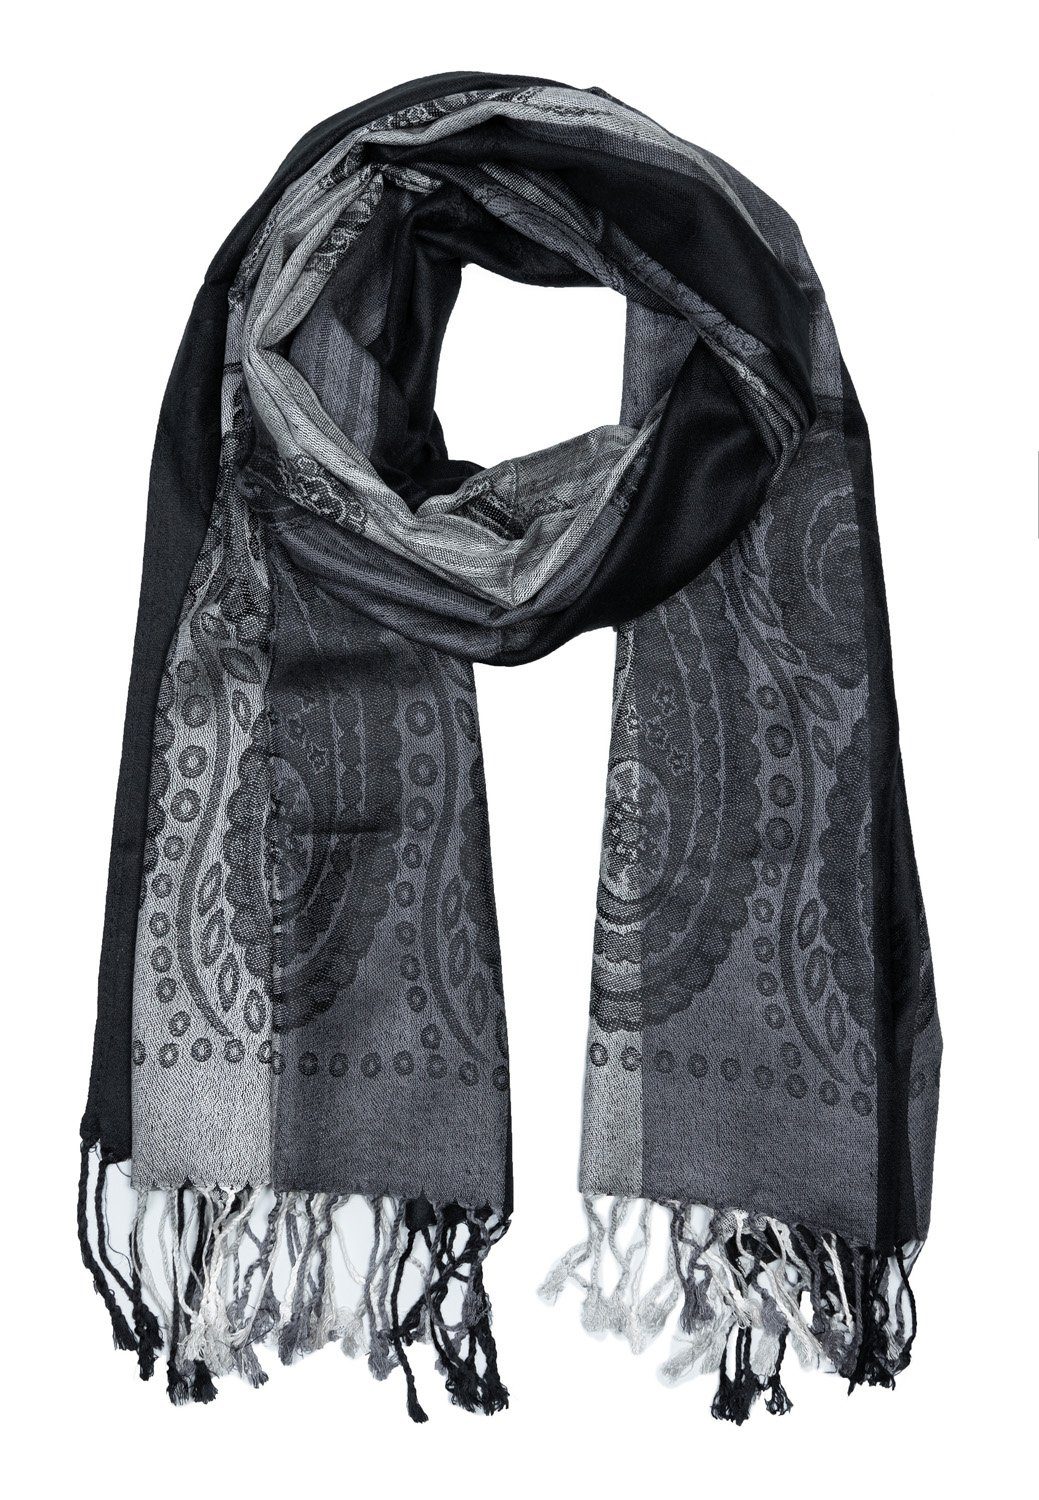 Schwarz Modeschal Quasten und Schal Goodman hochwertiges Design, Paisley Design Material verspielten Love mit Sehr